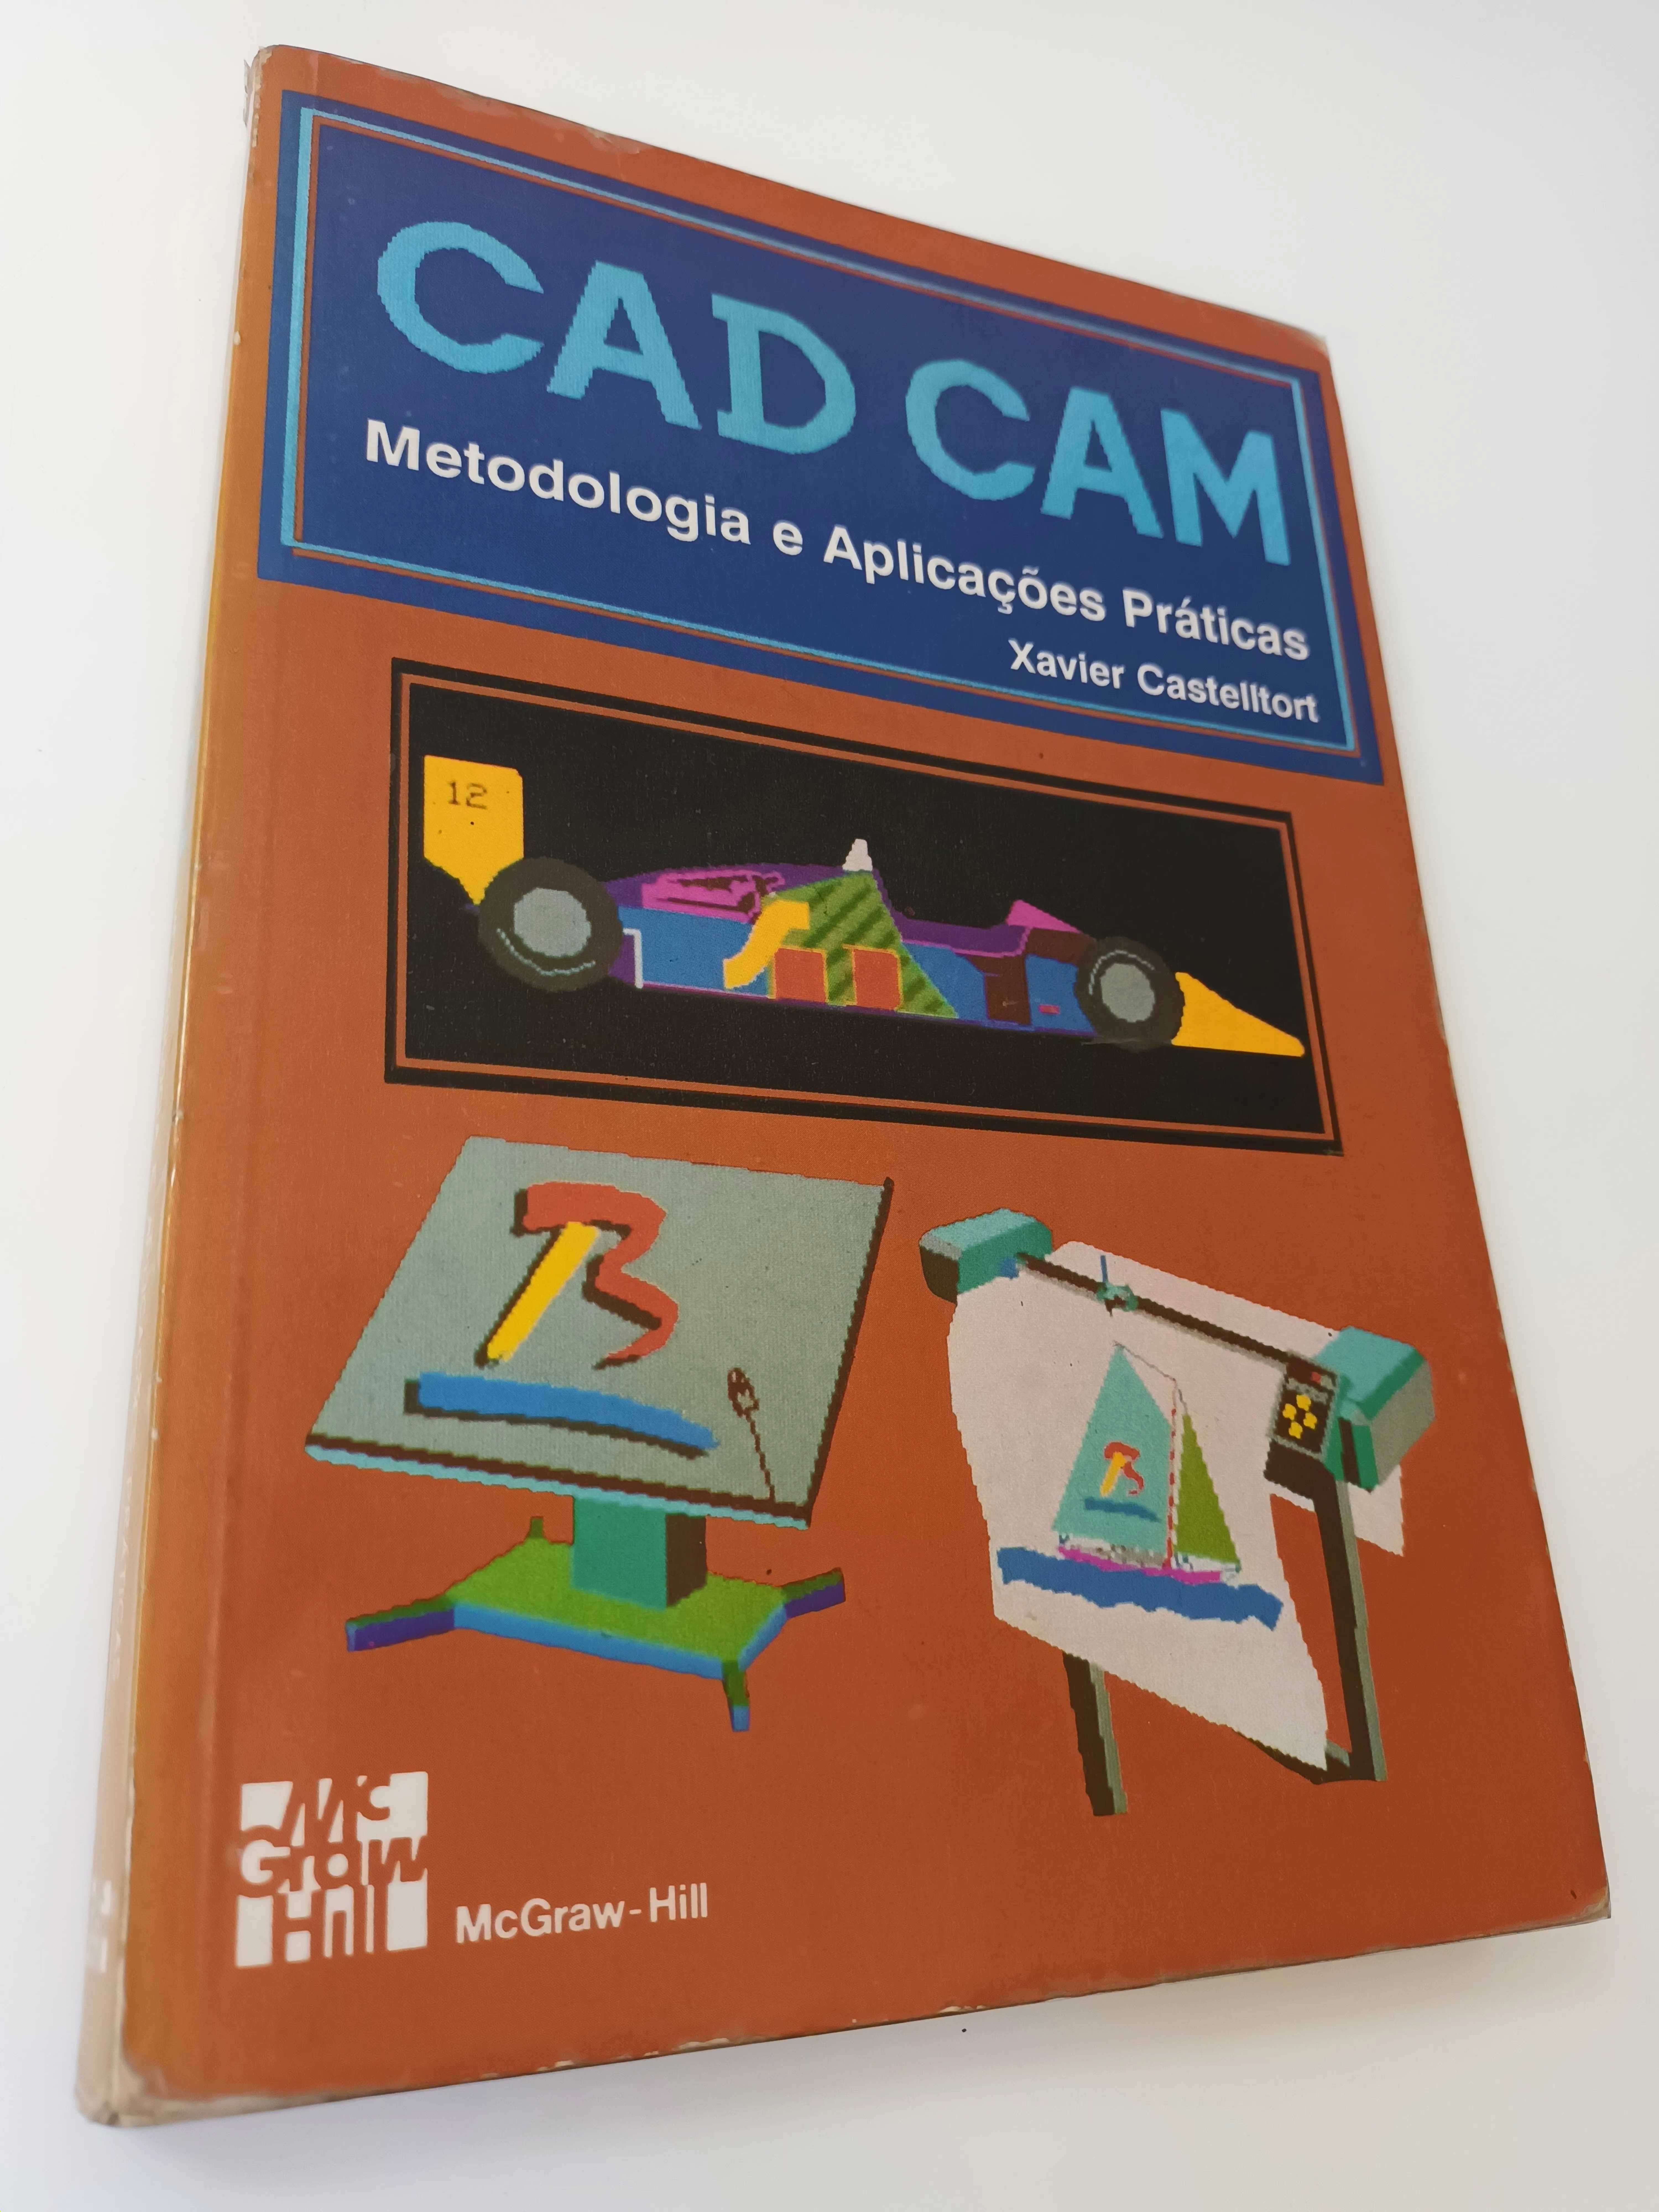 CAD  CAM - Metodologia e Aplicações Práticas, 259 Pág.